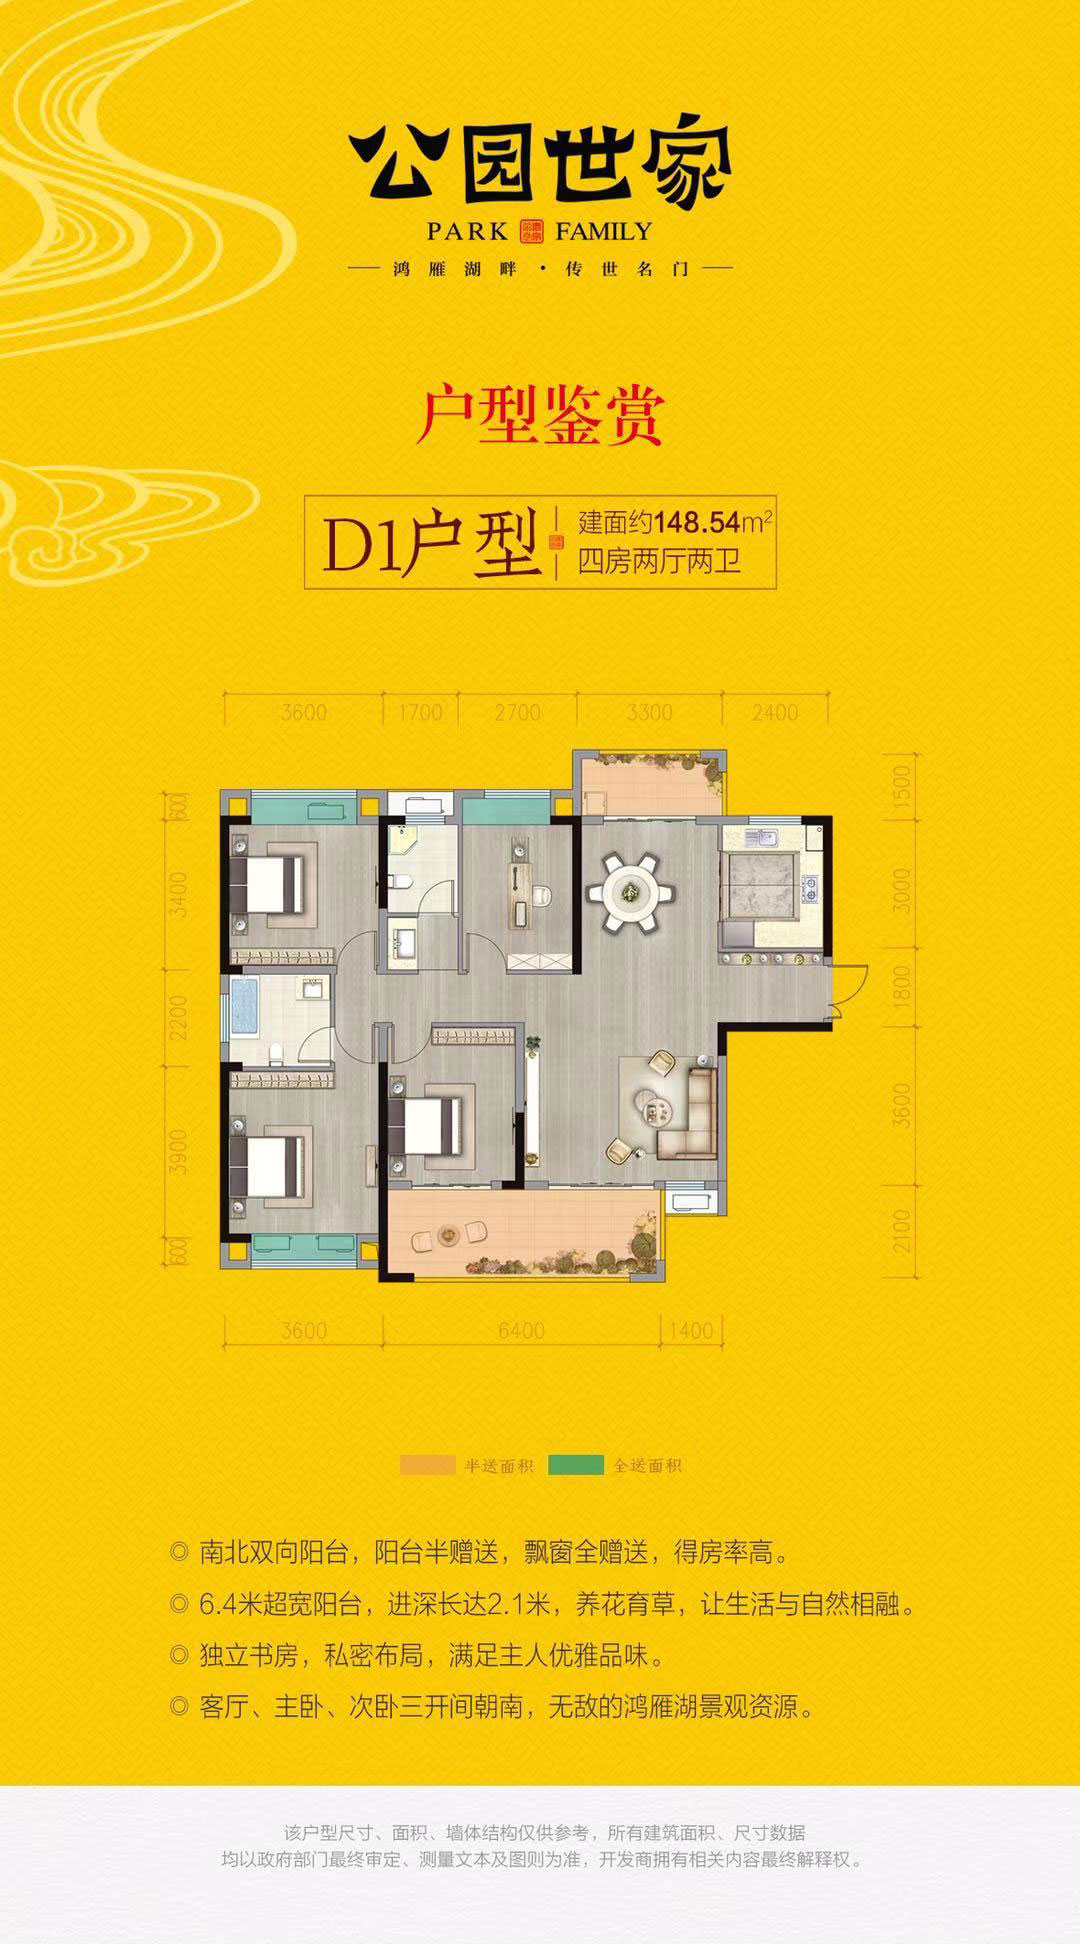 益阳-南县幸福家园为您提供D1户型图片详情鉴赏